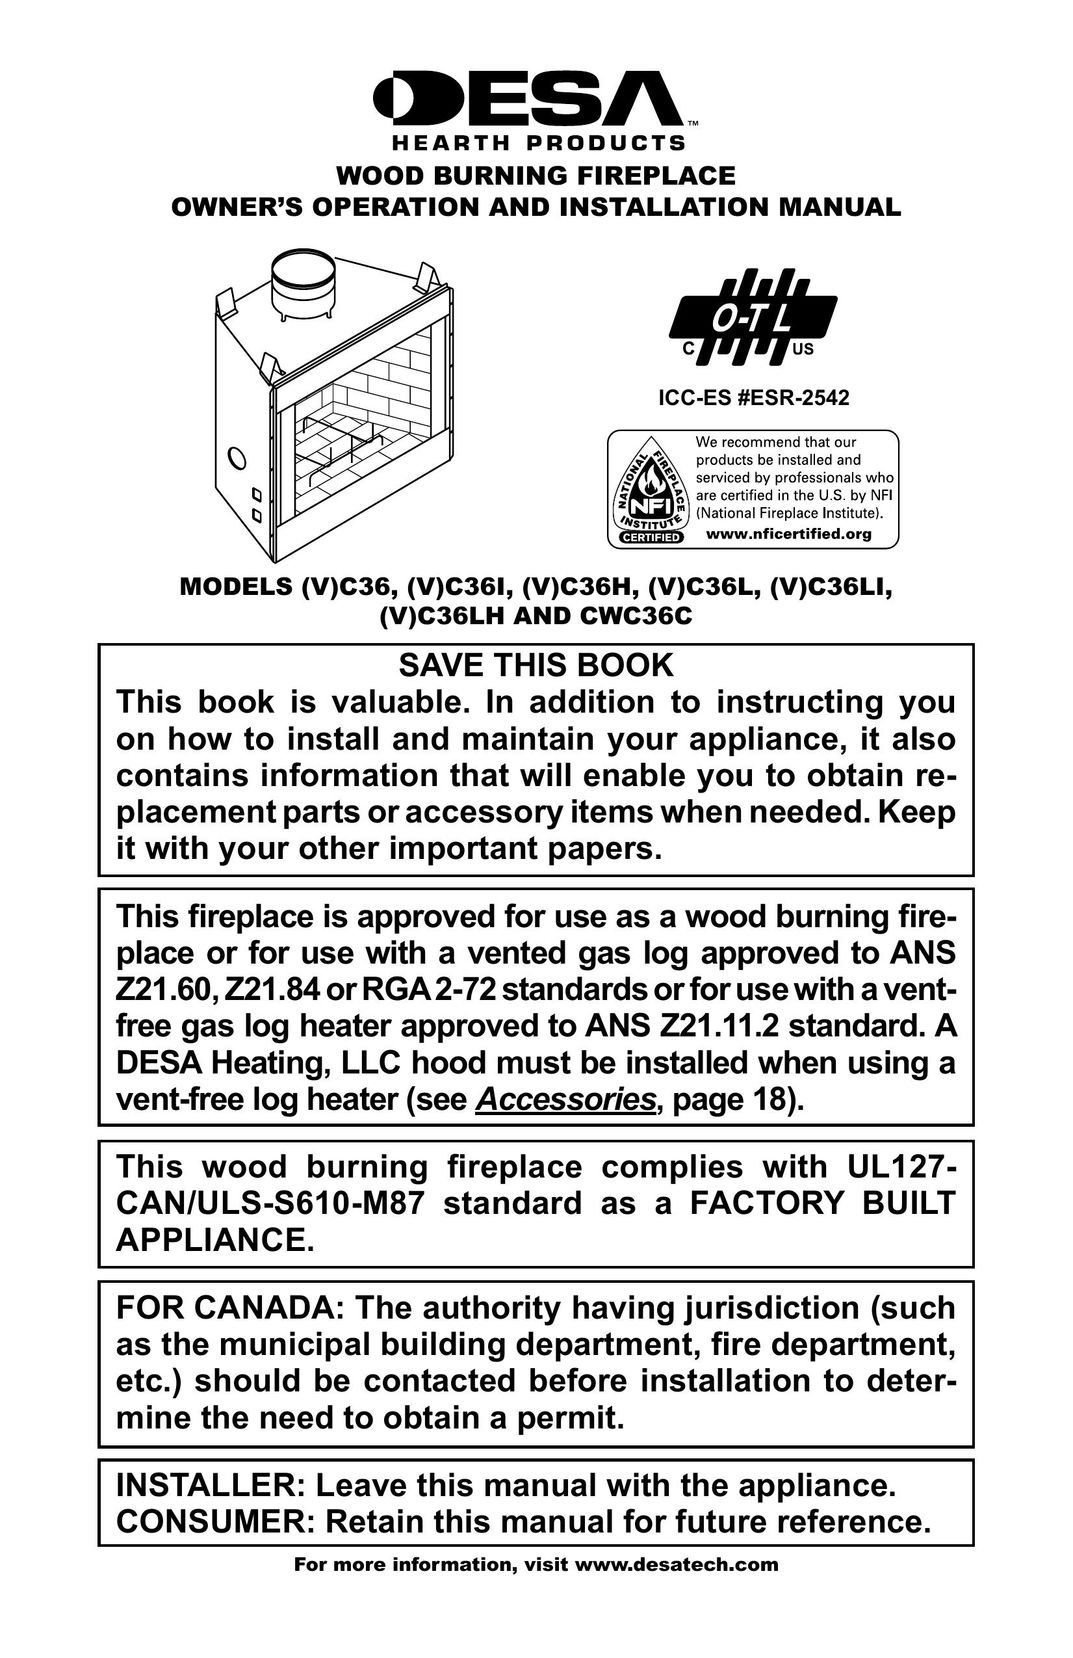 Desa (V)C36LI Indoor Fireplace User Manual